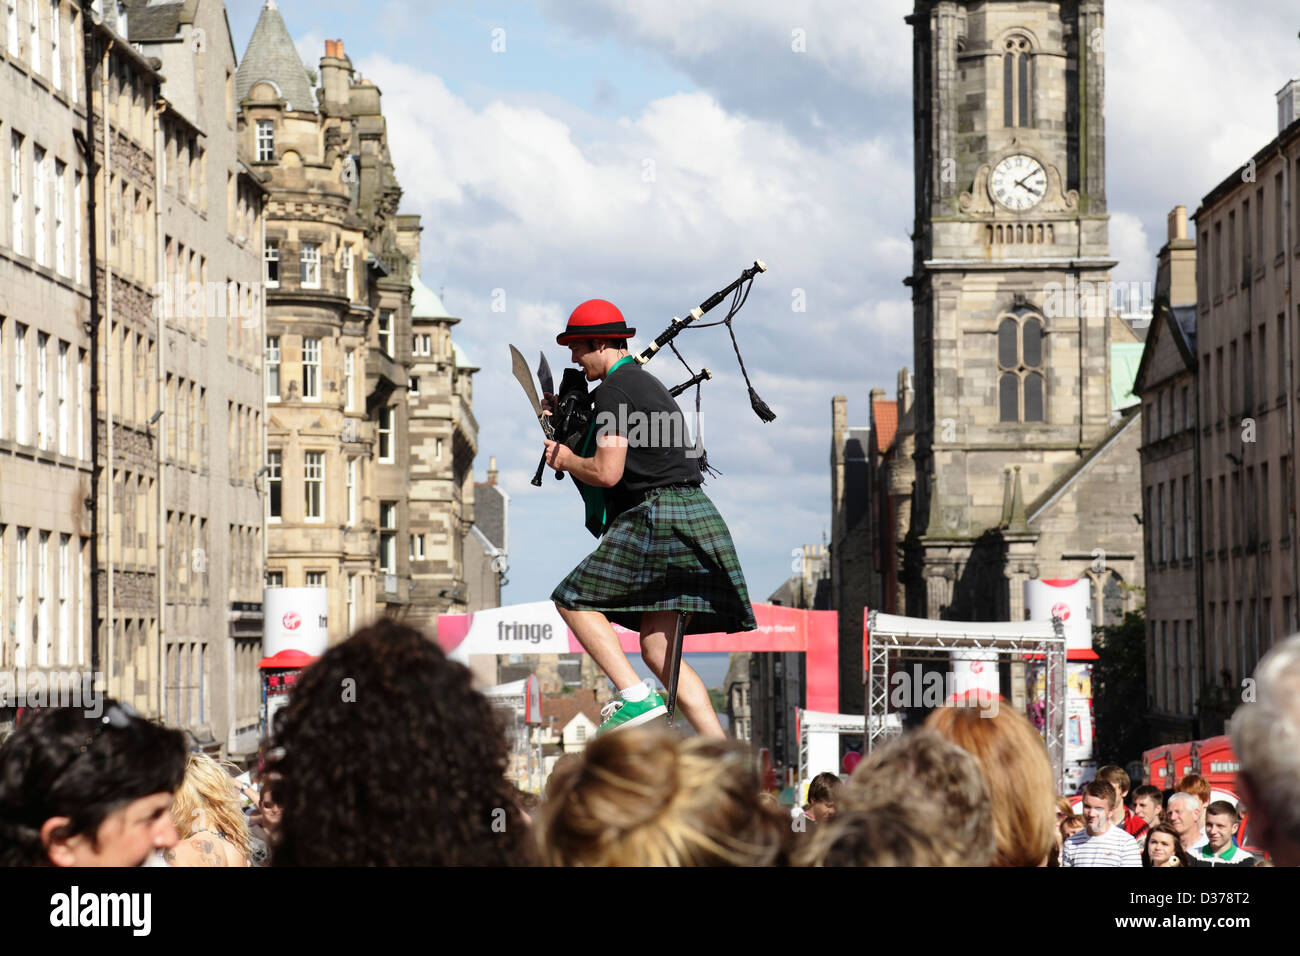 Le comédien de Street Performer Kilted Colin sur le Royal Mile au Edinburgh International Festival Fringe, en Écosse, au Royaume-Uni Banque D'Images